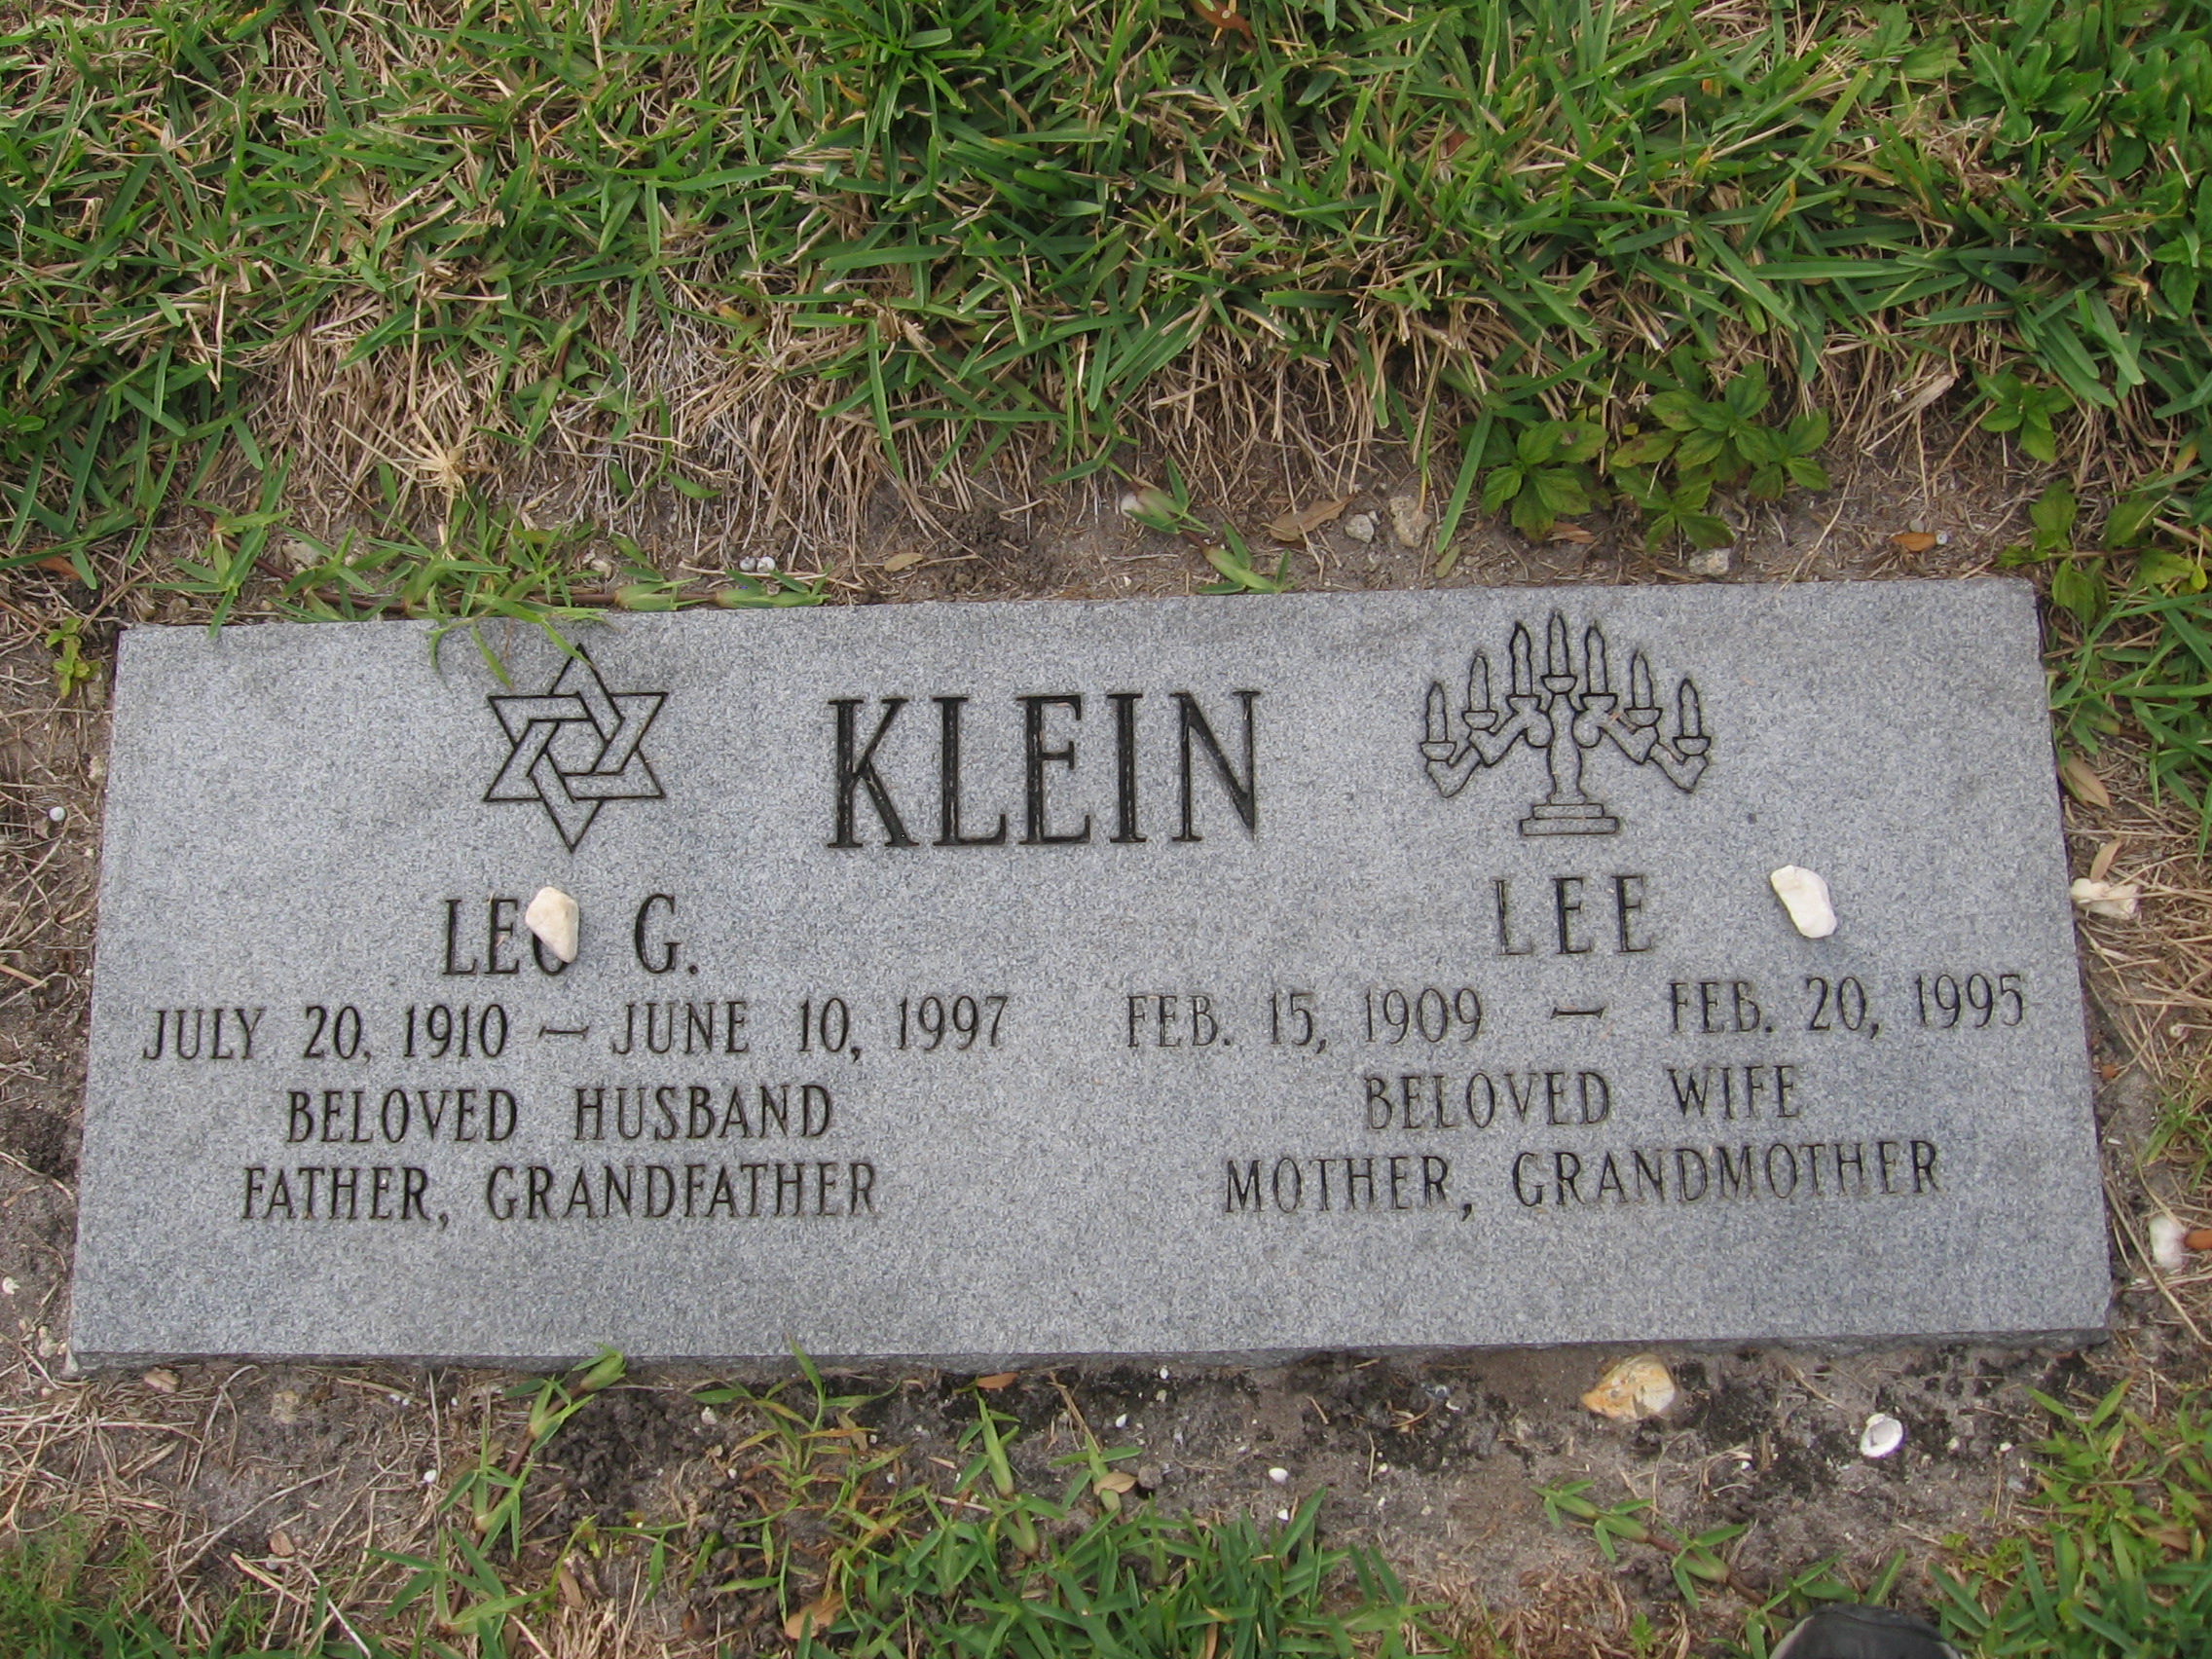 Lee Klein